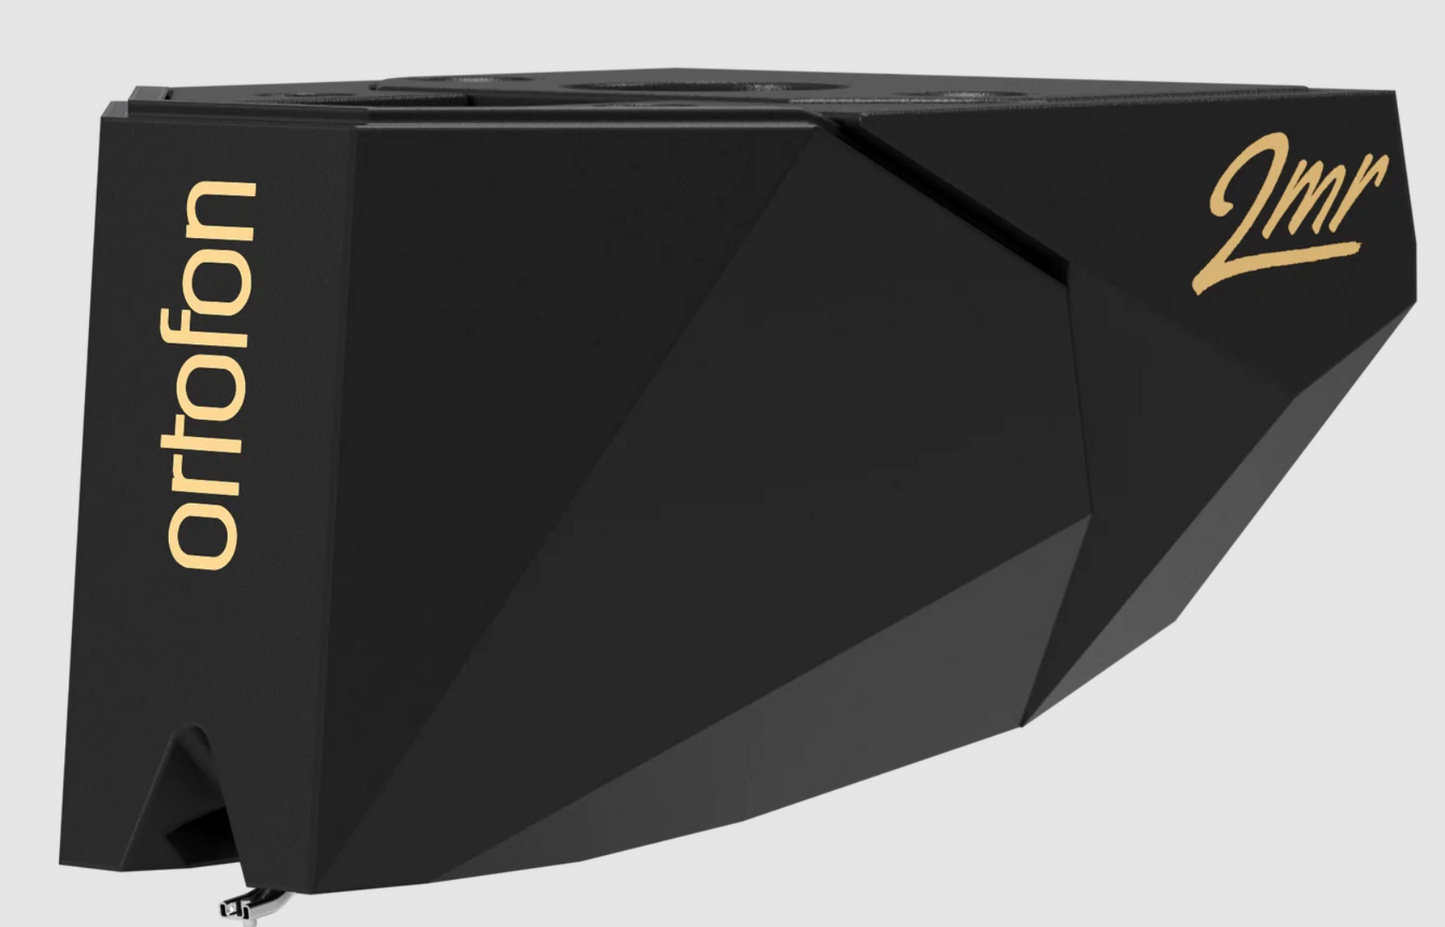 Ortofon 2MR Black LVB 250 (suits Rega turntables) Cartridge. angled image